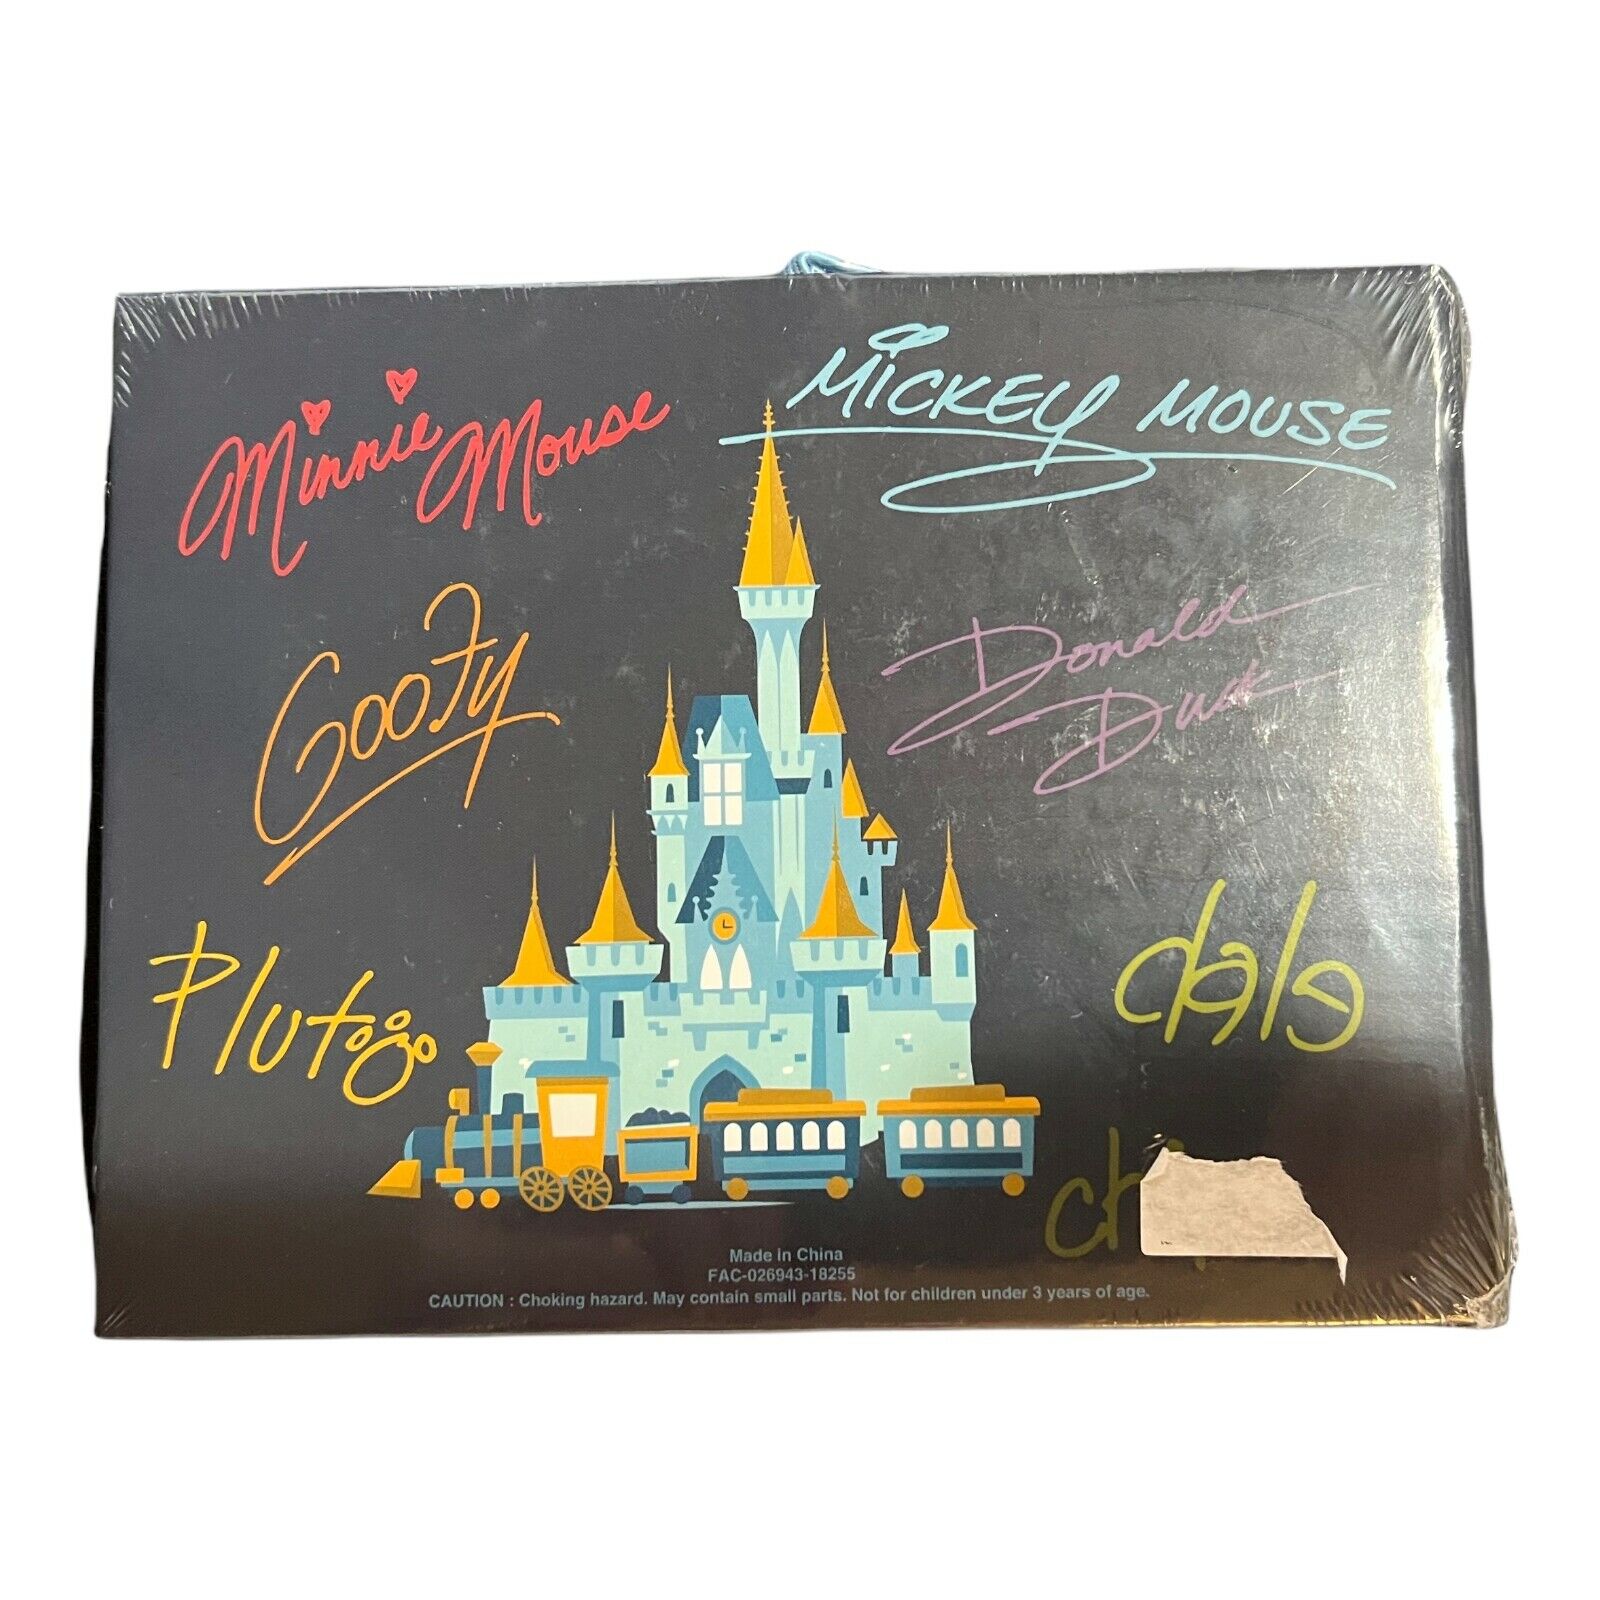  Walt Disney World Official Autograph Book (2019) (Original  Version) (Original Version) : Disney: Office Products